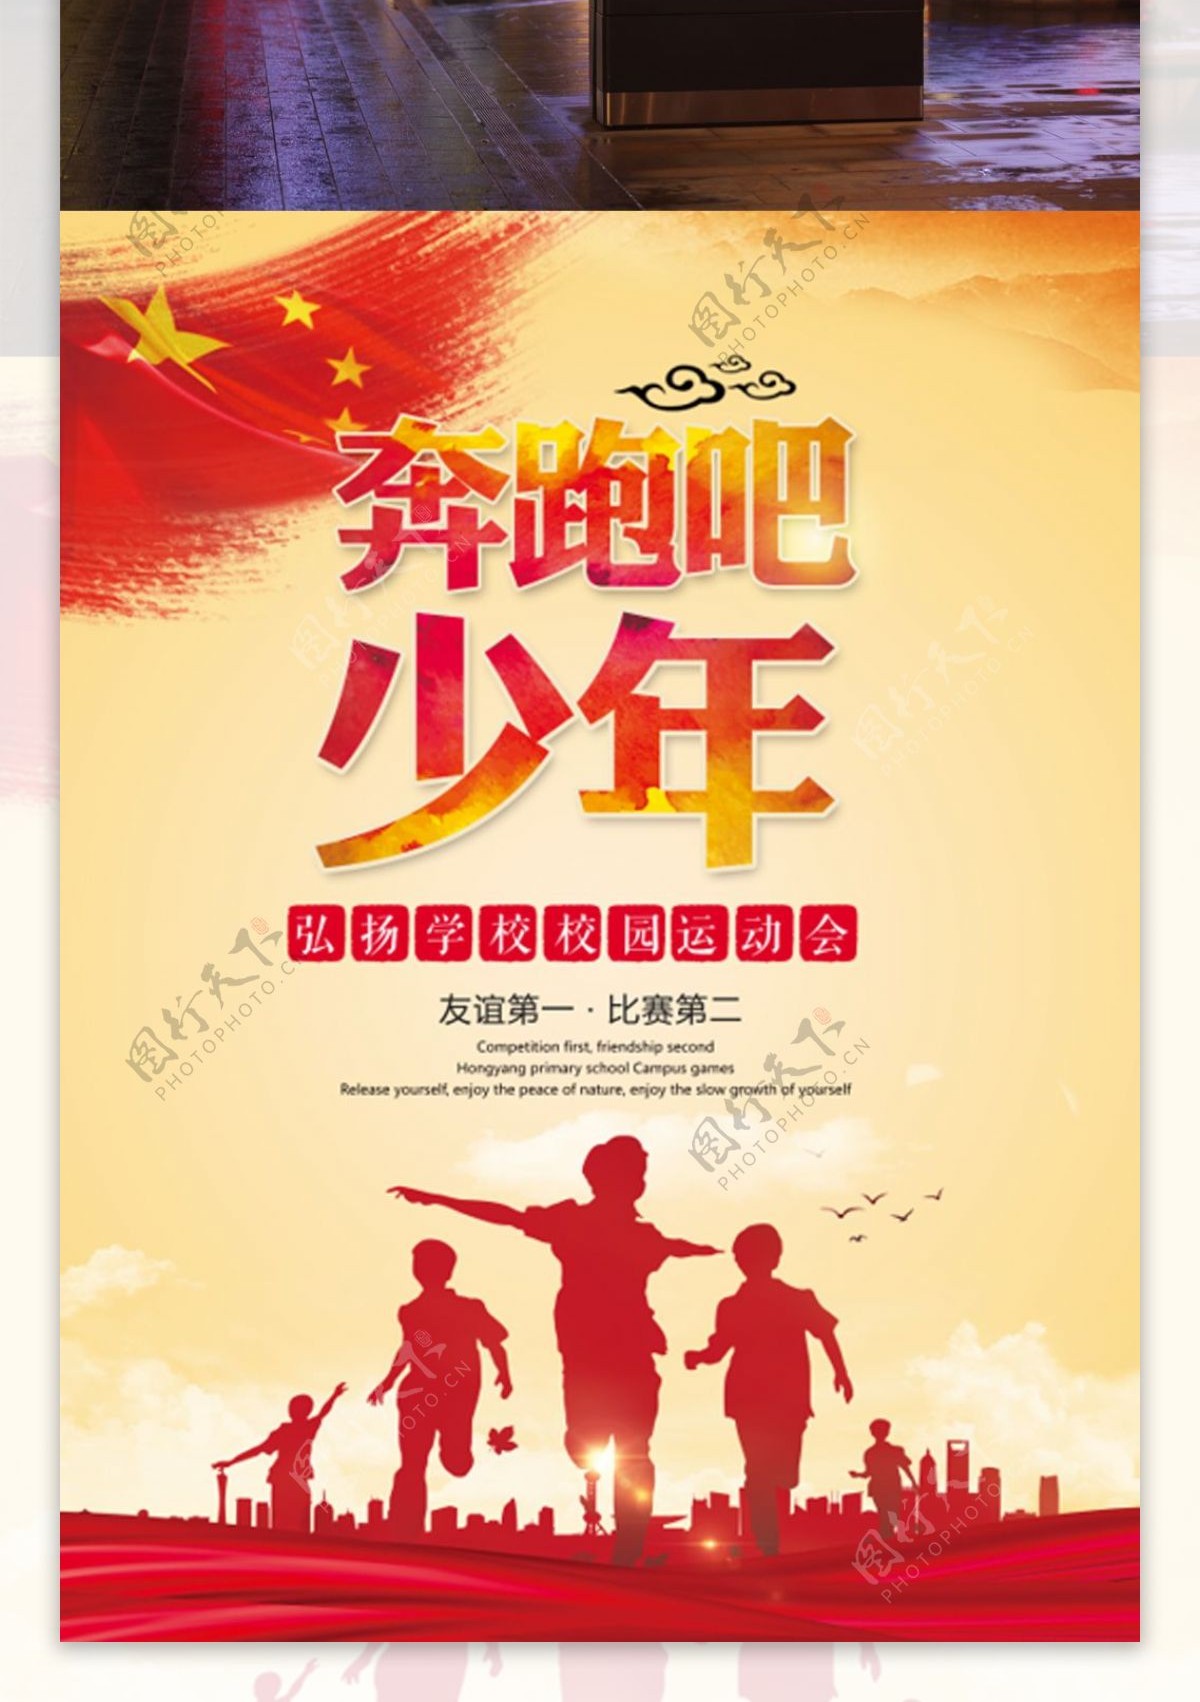 中国风红色奔跑吧少年运动会海报设计